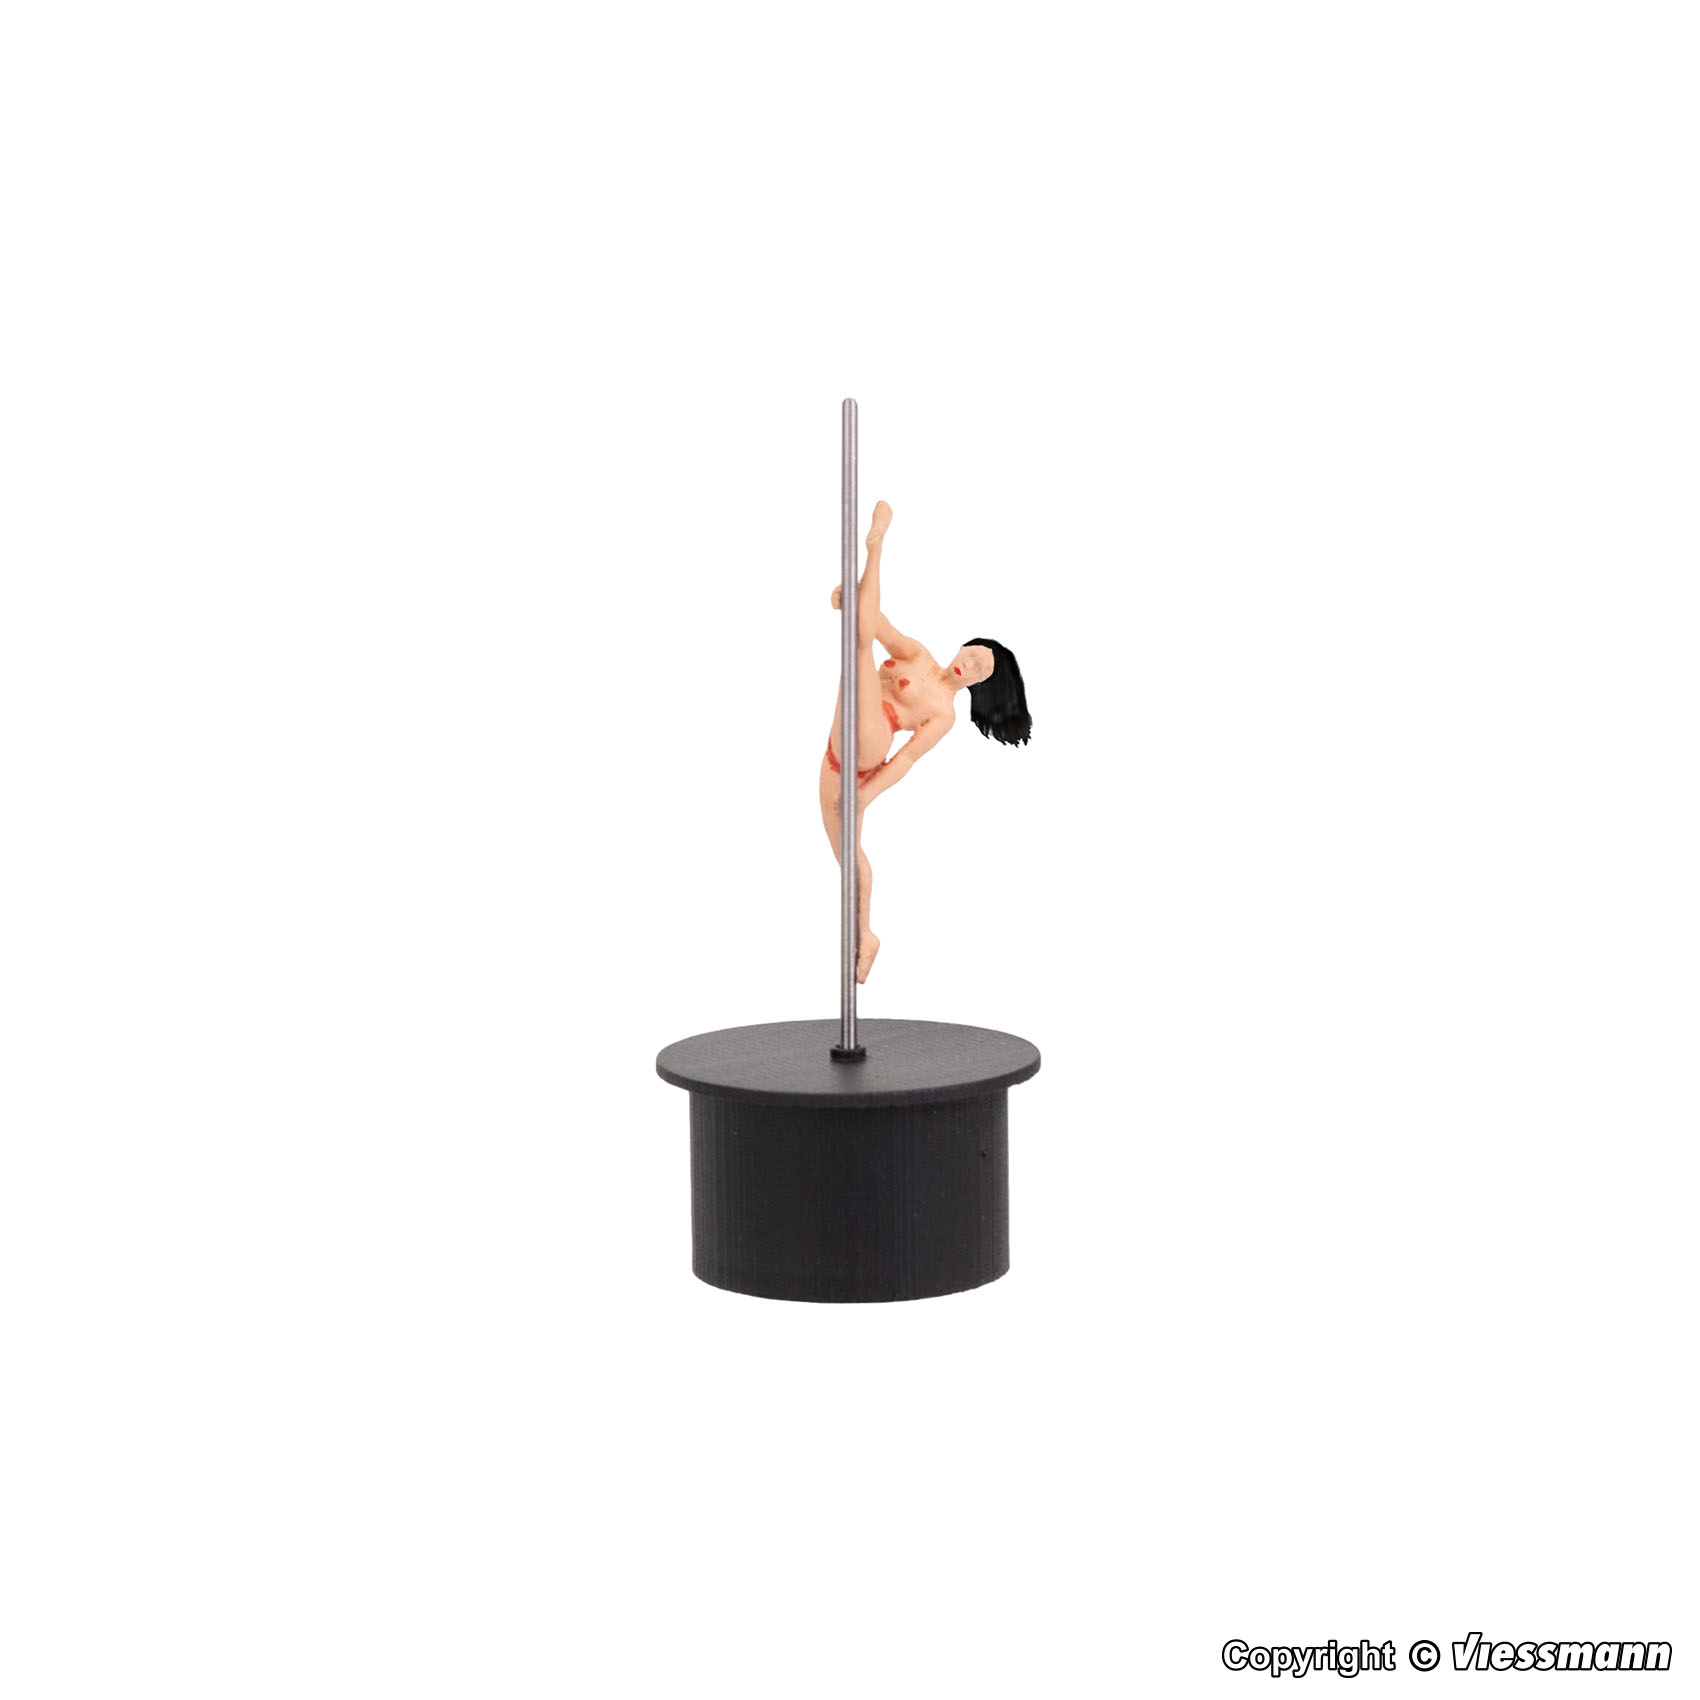 Viessmann 1506 eMotion Erotic Pole Dancer